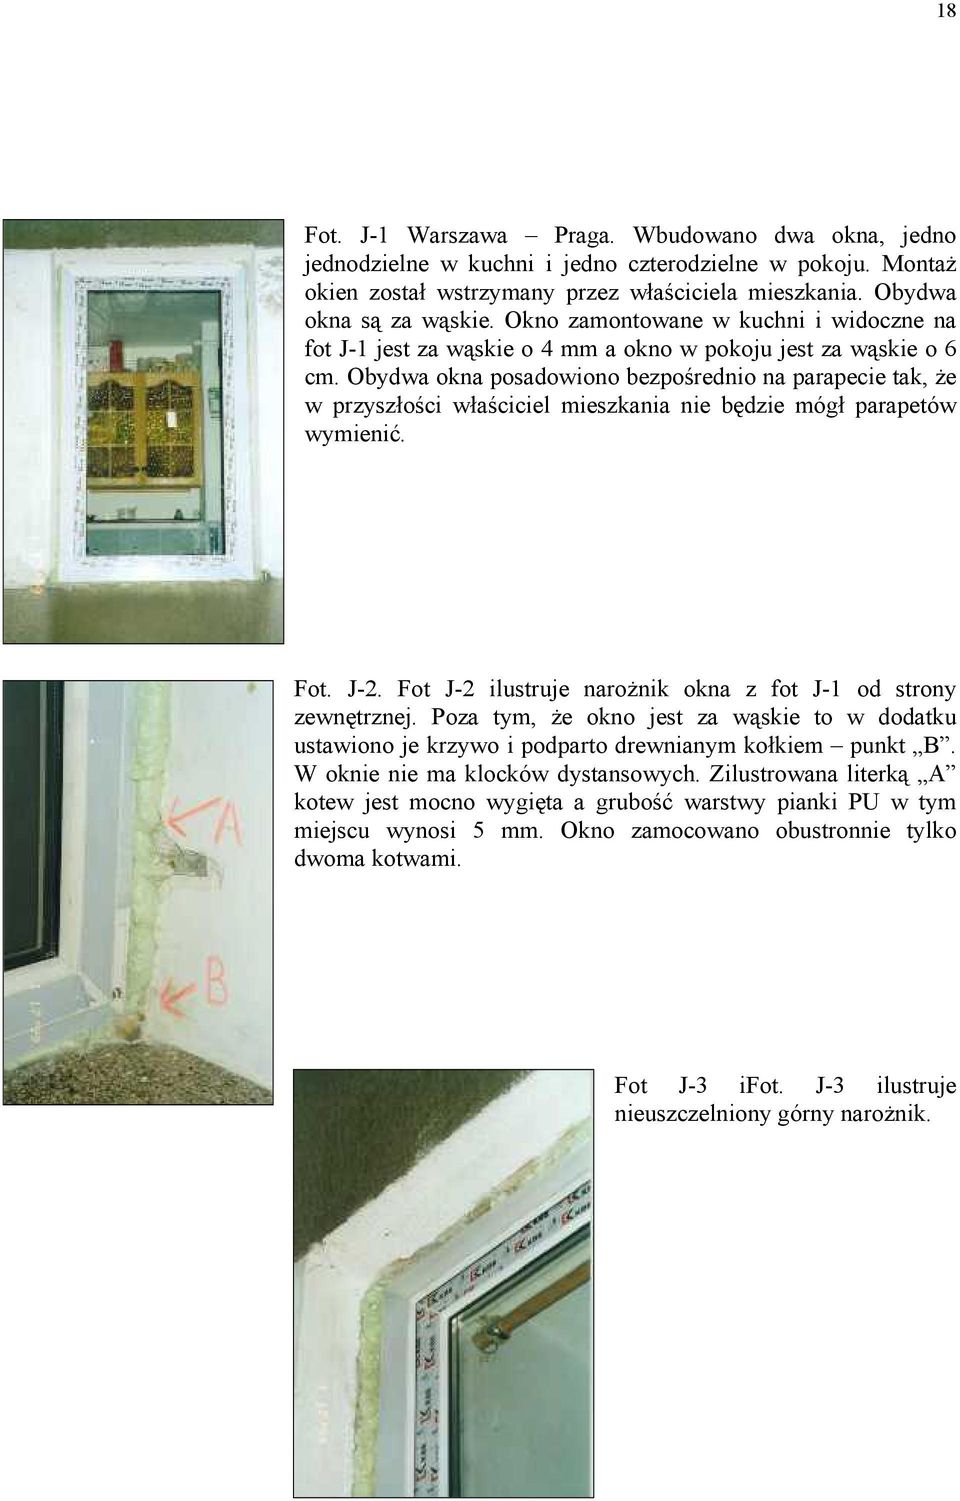 Obydwa okna posadowiono bezpośrednio na parapecie tak, że w przyszłości właściciel mieszkania nie będzie mógł parapetów wymienić. Fot. J-2.